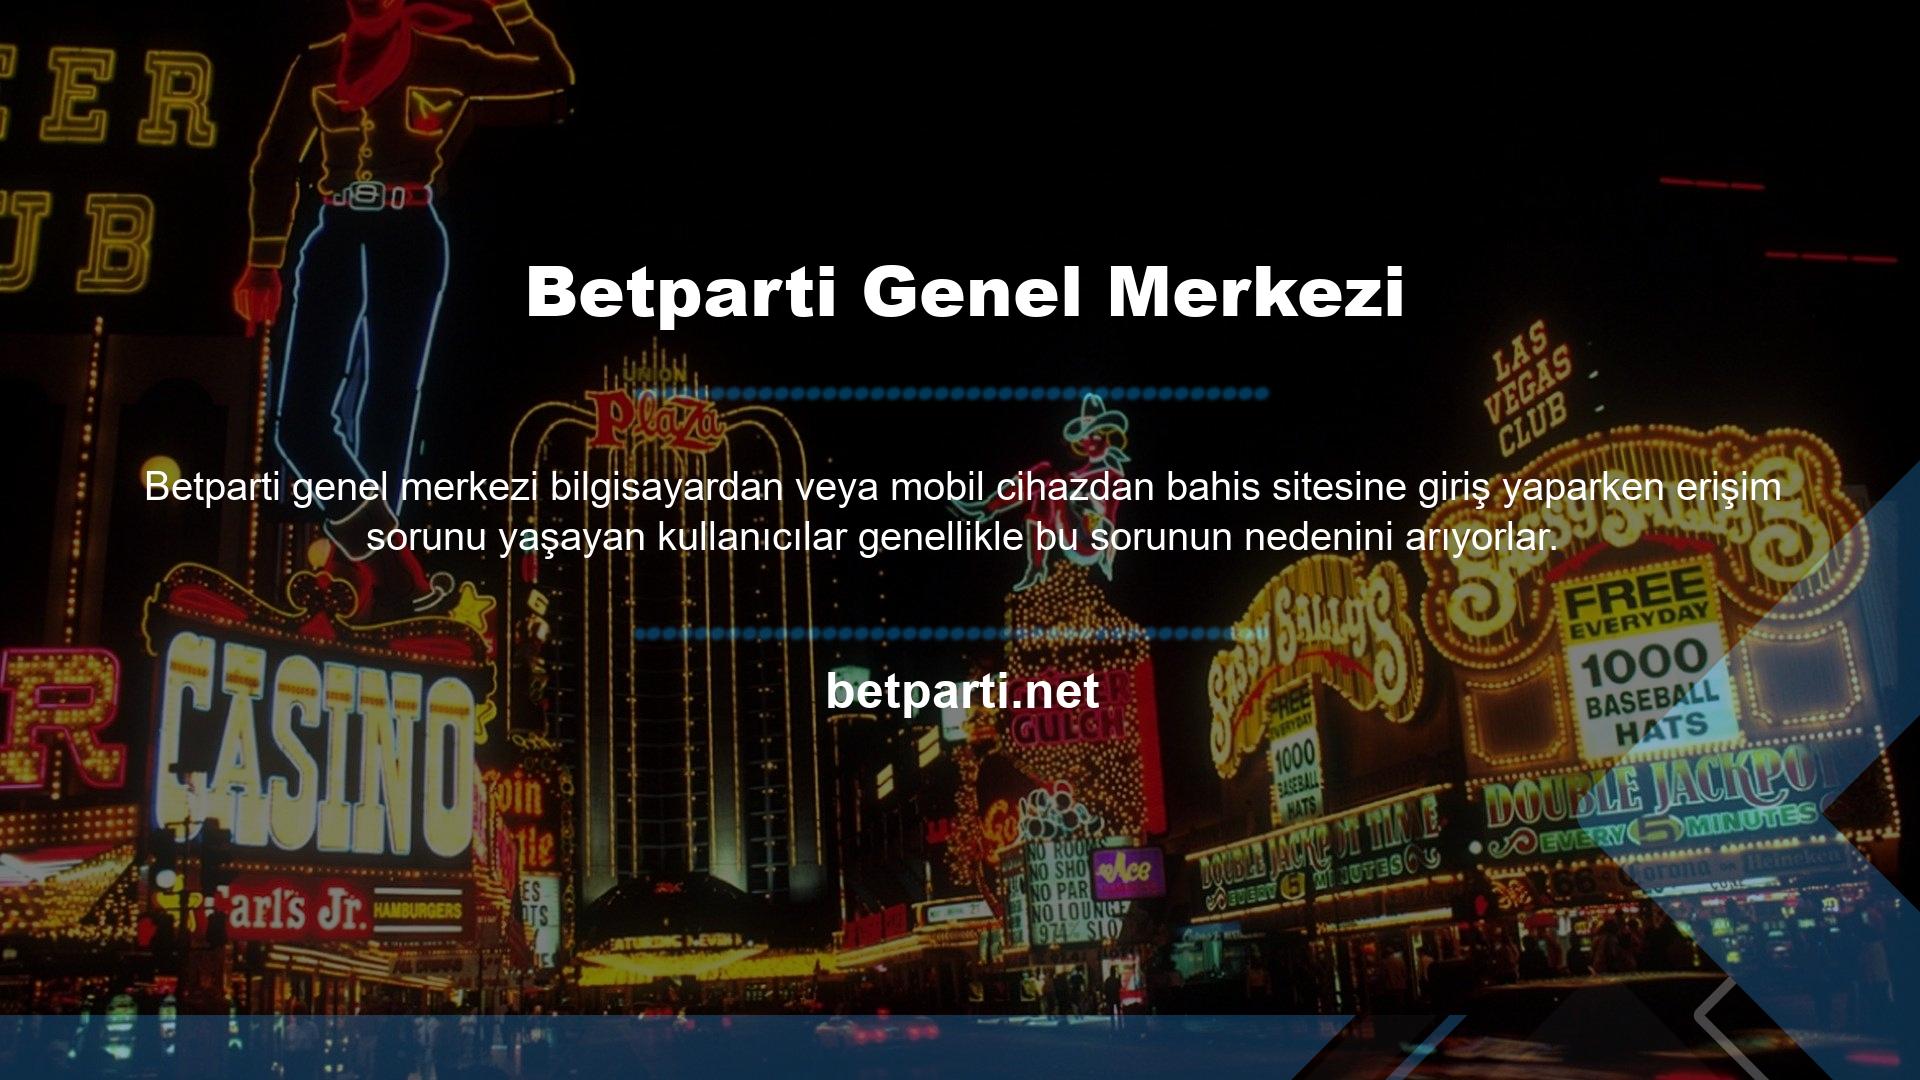 Betparti kurumsal üyeliği BTK tarafından askıya alındı ​​ve erişimi kalıcı olarak engellendi